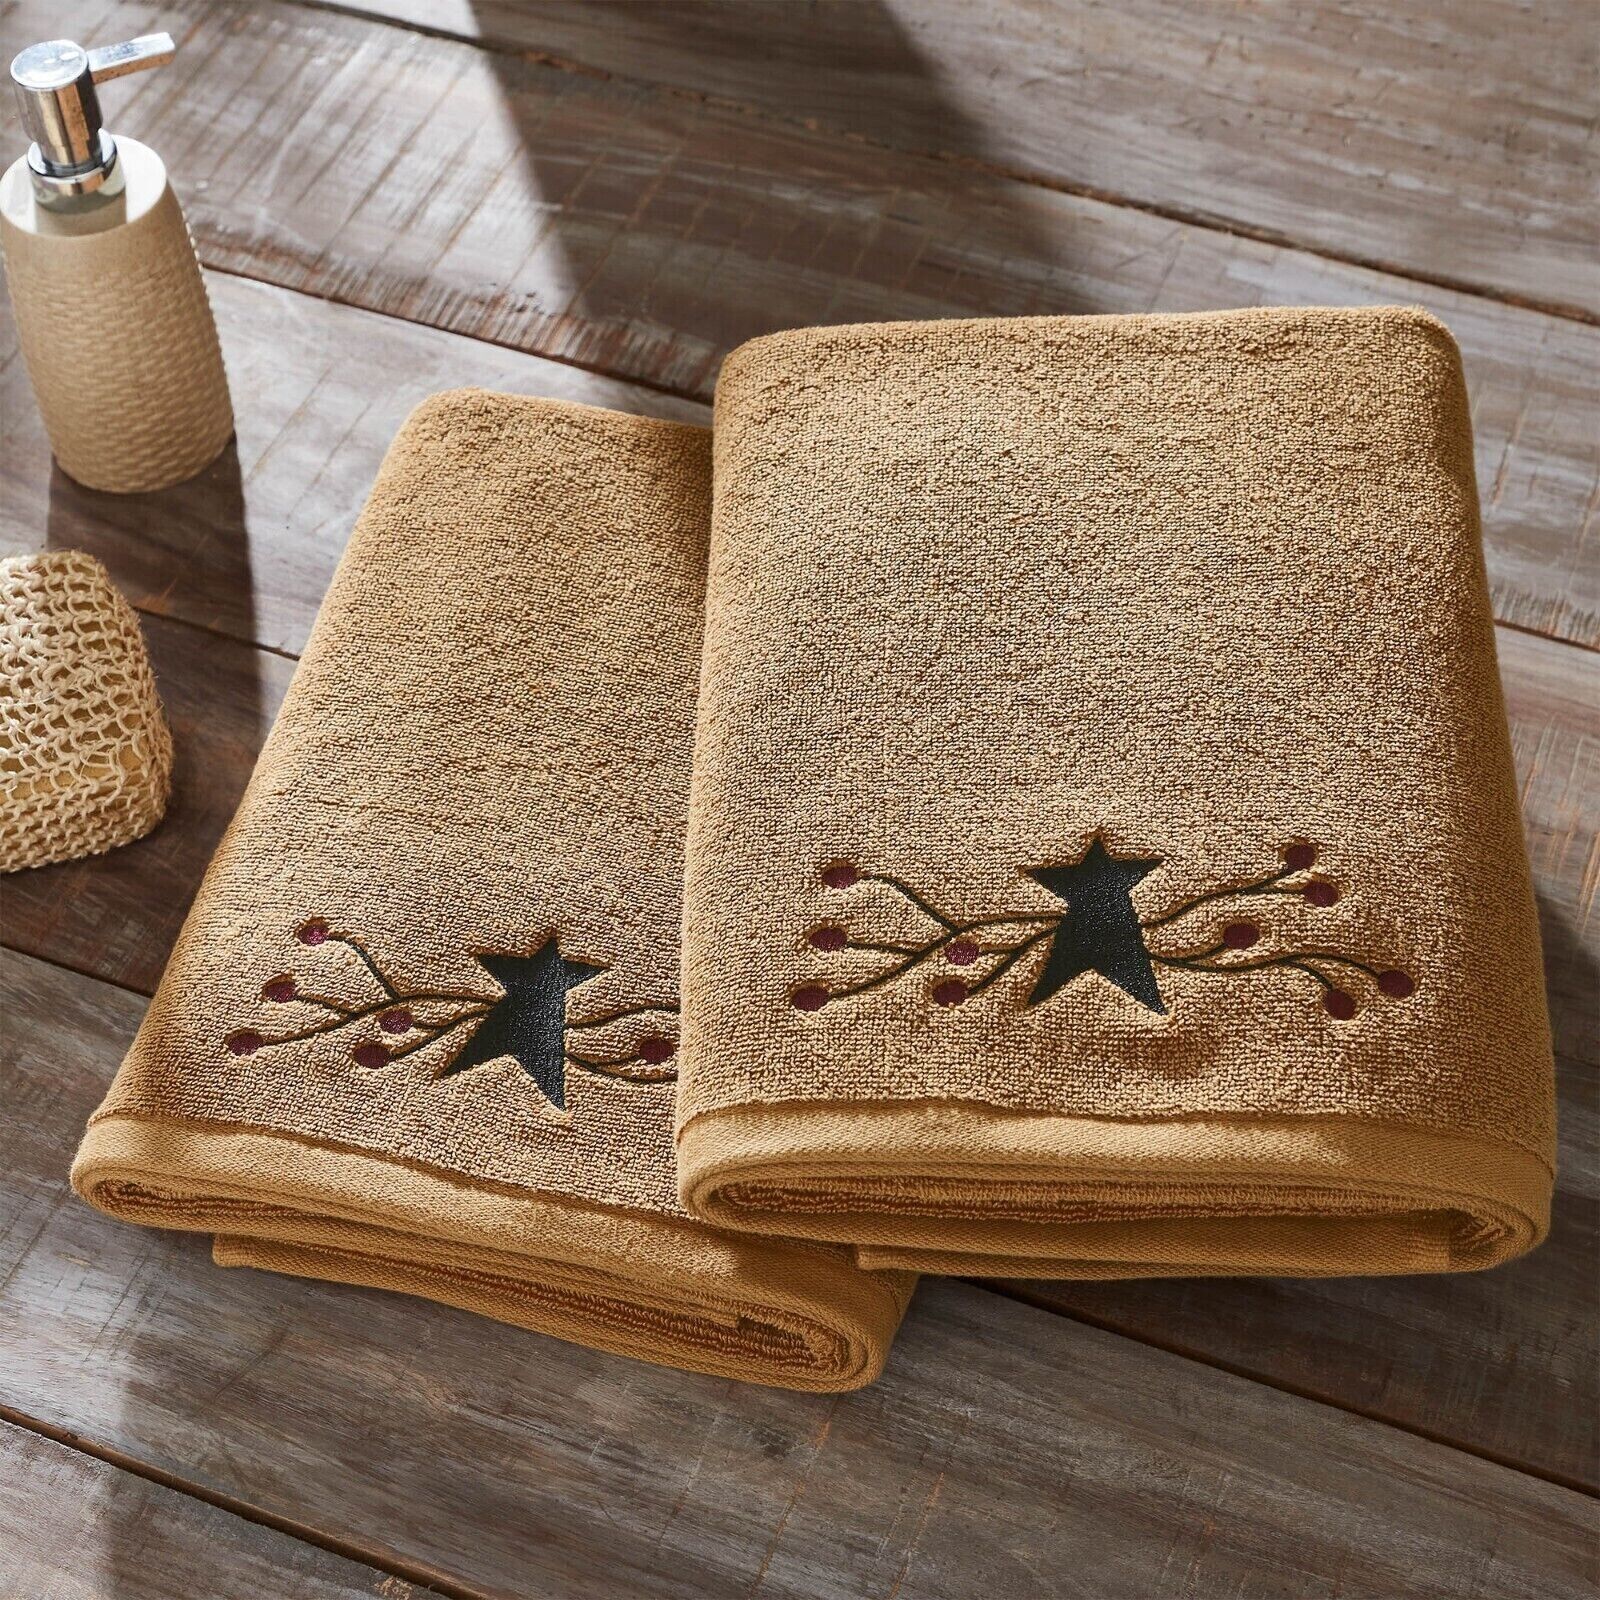 2 Country Primitive Farmhouse Pip Berry Vine Star Cotton Bath Towels 27x54 Towel